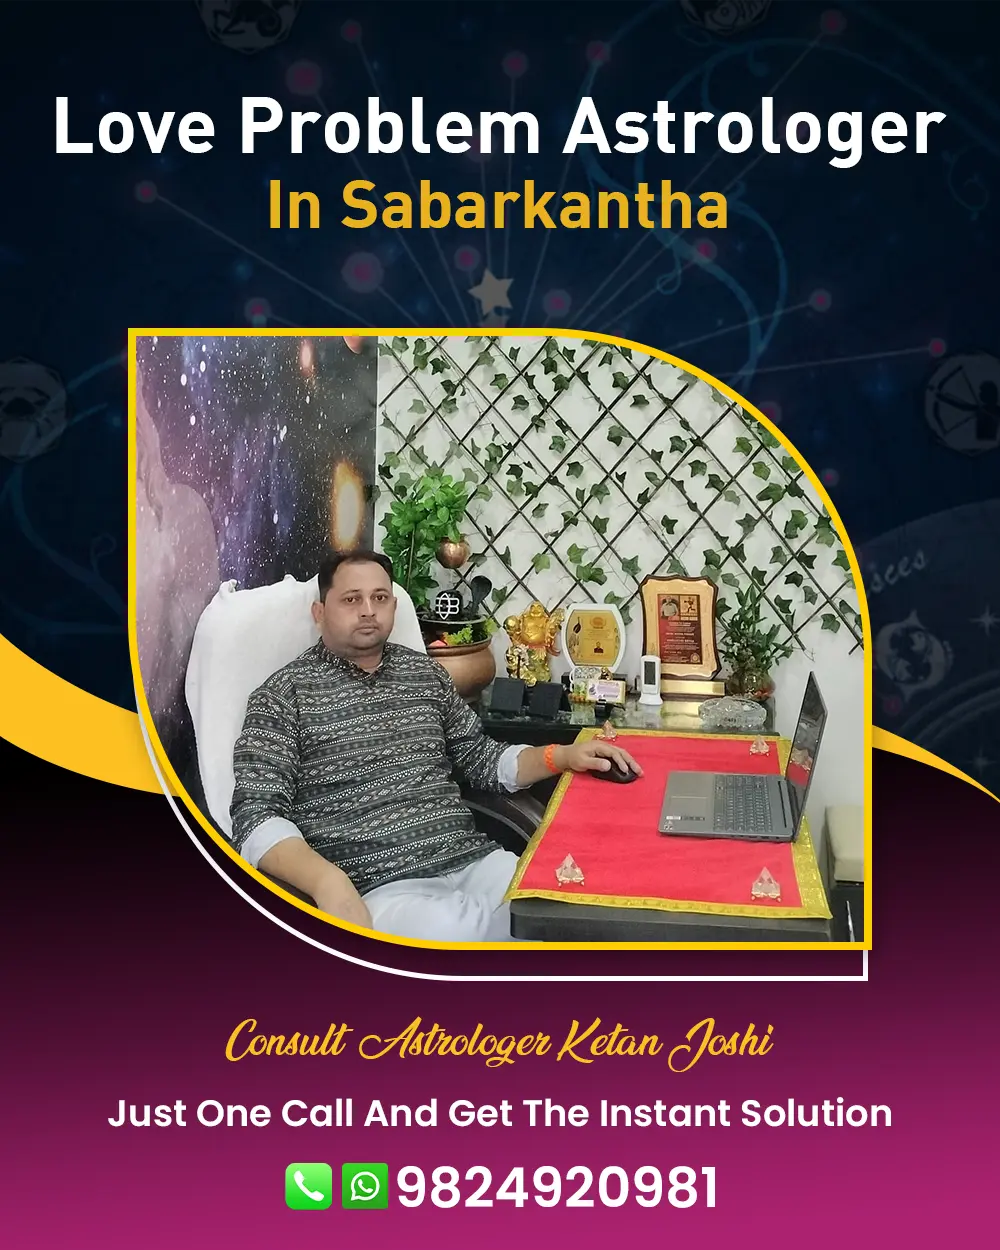 Love Problem Astrologer In Sabarkantha